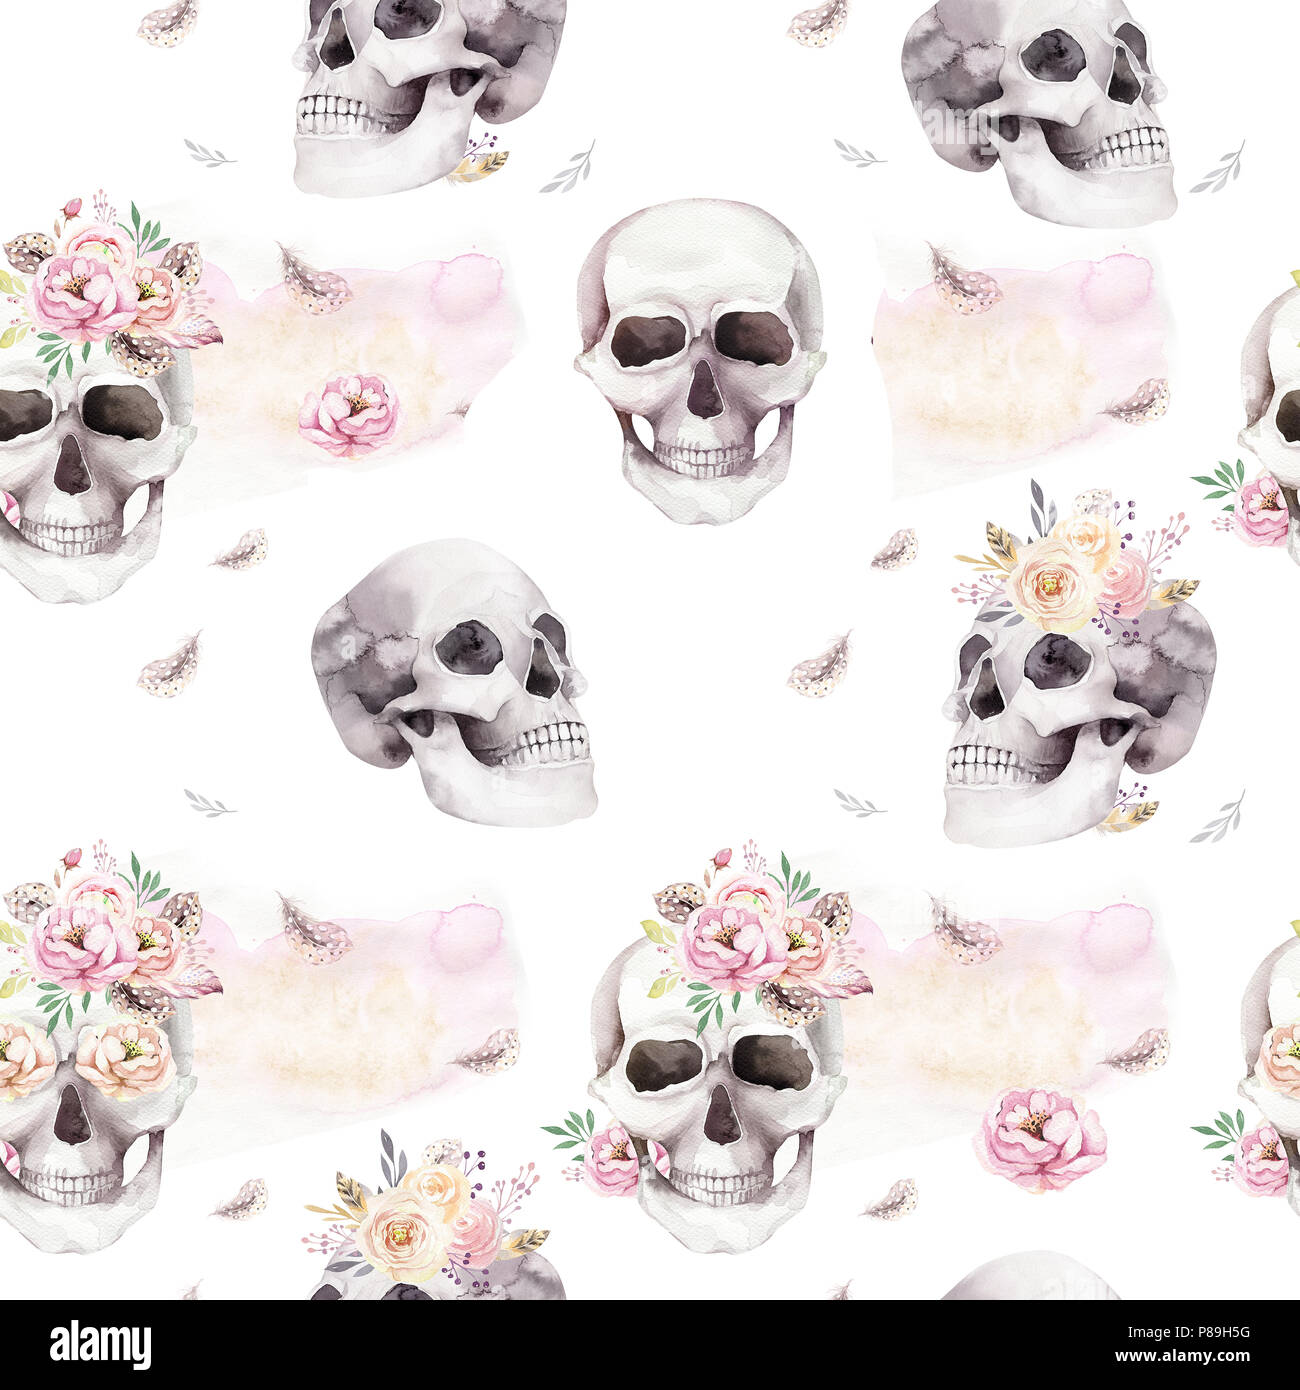 Tattoo Style Skull Illustration Stockfotos Und Bilder Kaufen Alamy